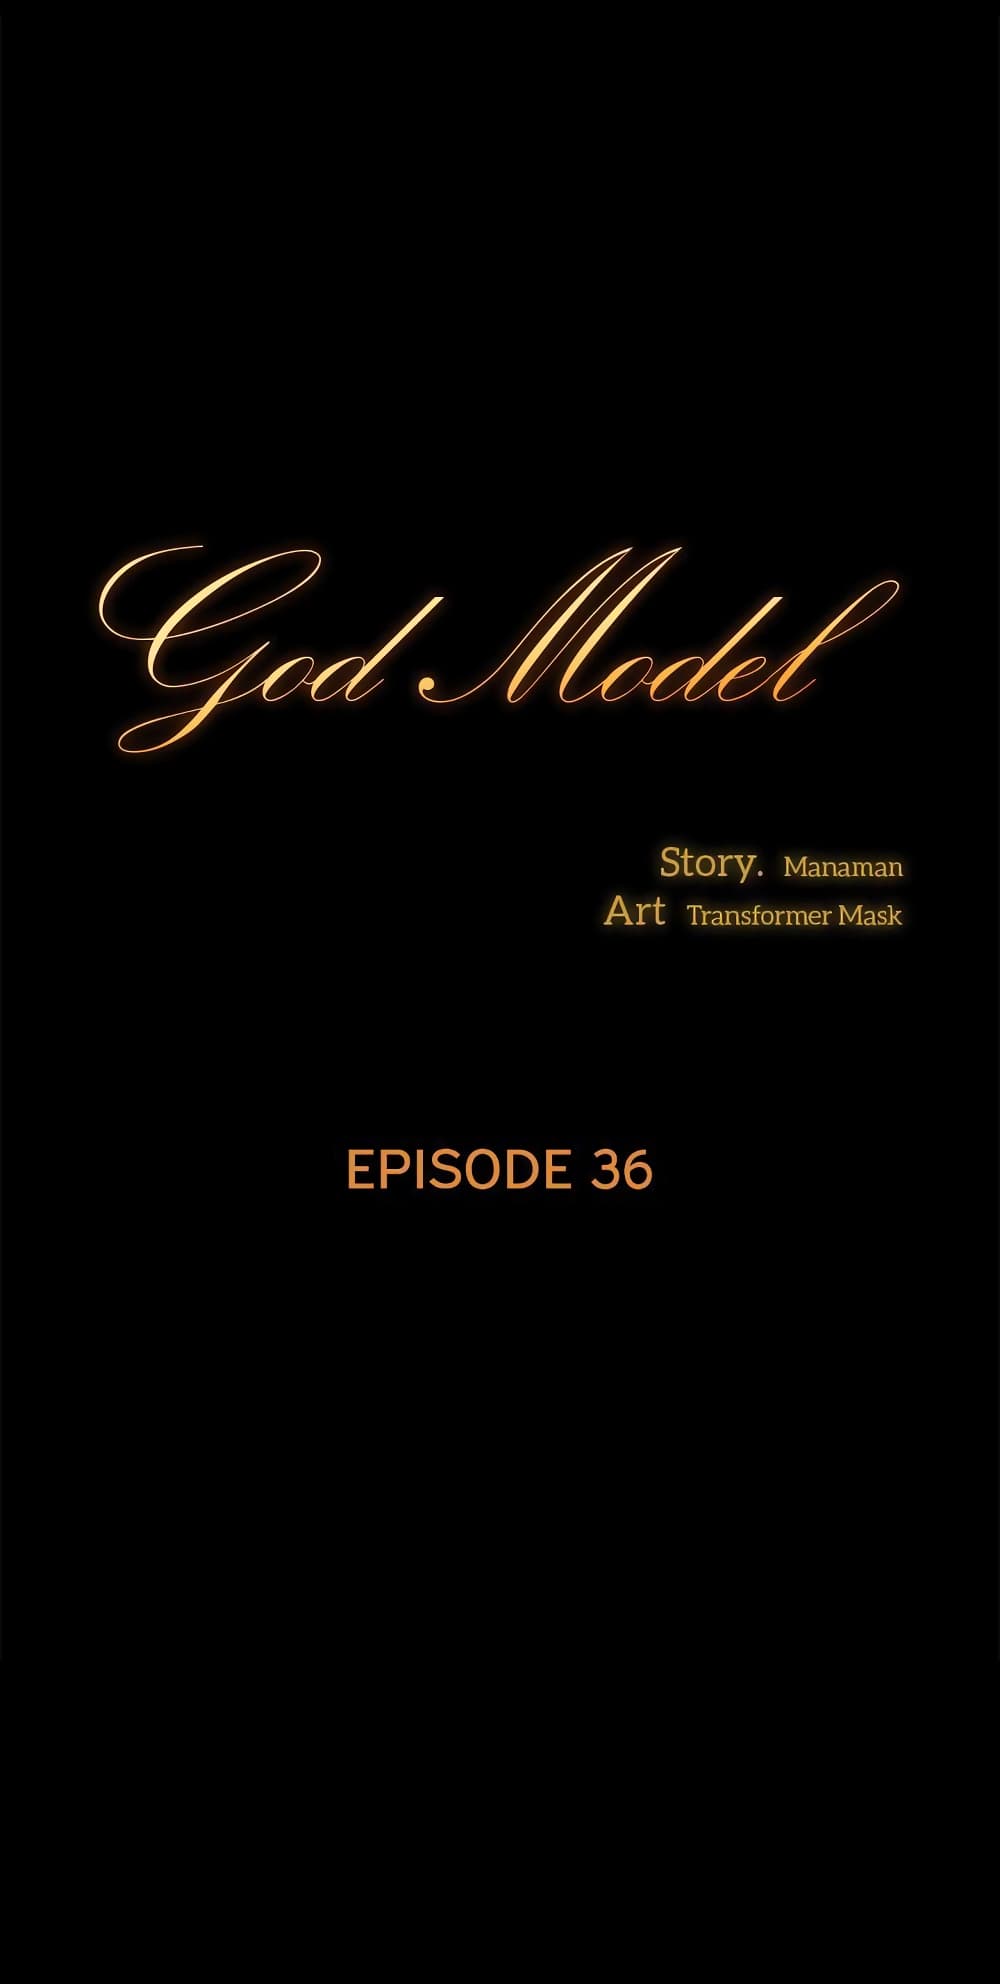 God Model 36-36